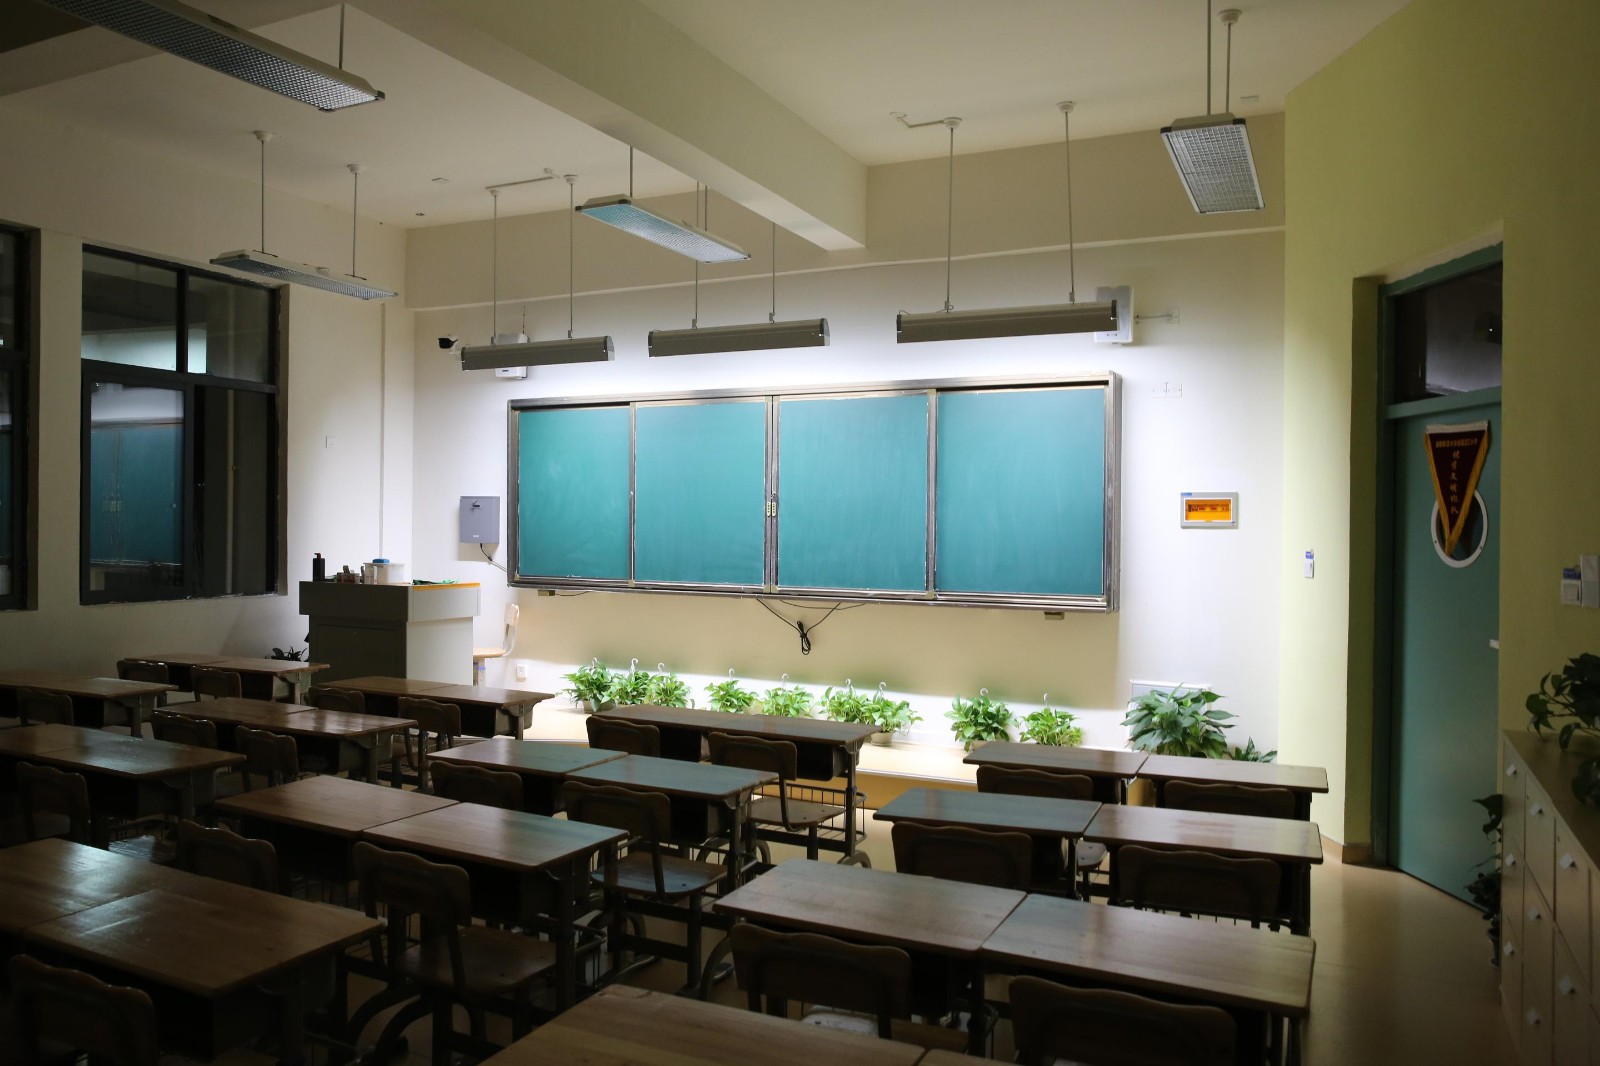 通过合理布置灯具的安装位置,解决学校教室照度均匀度不均,眩光危害等